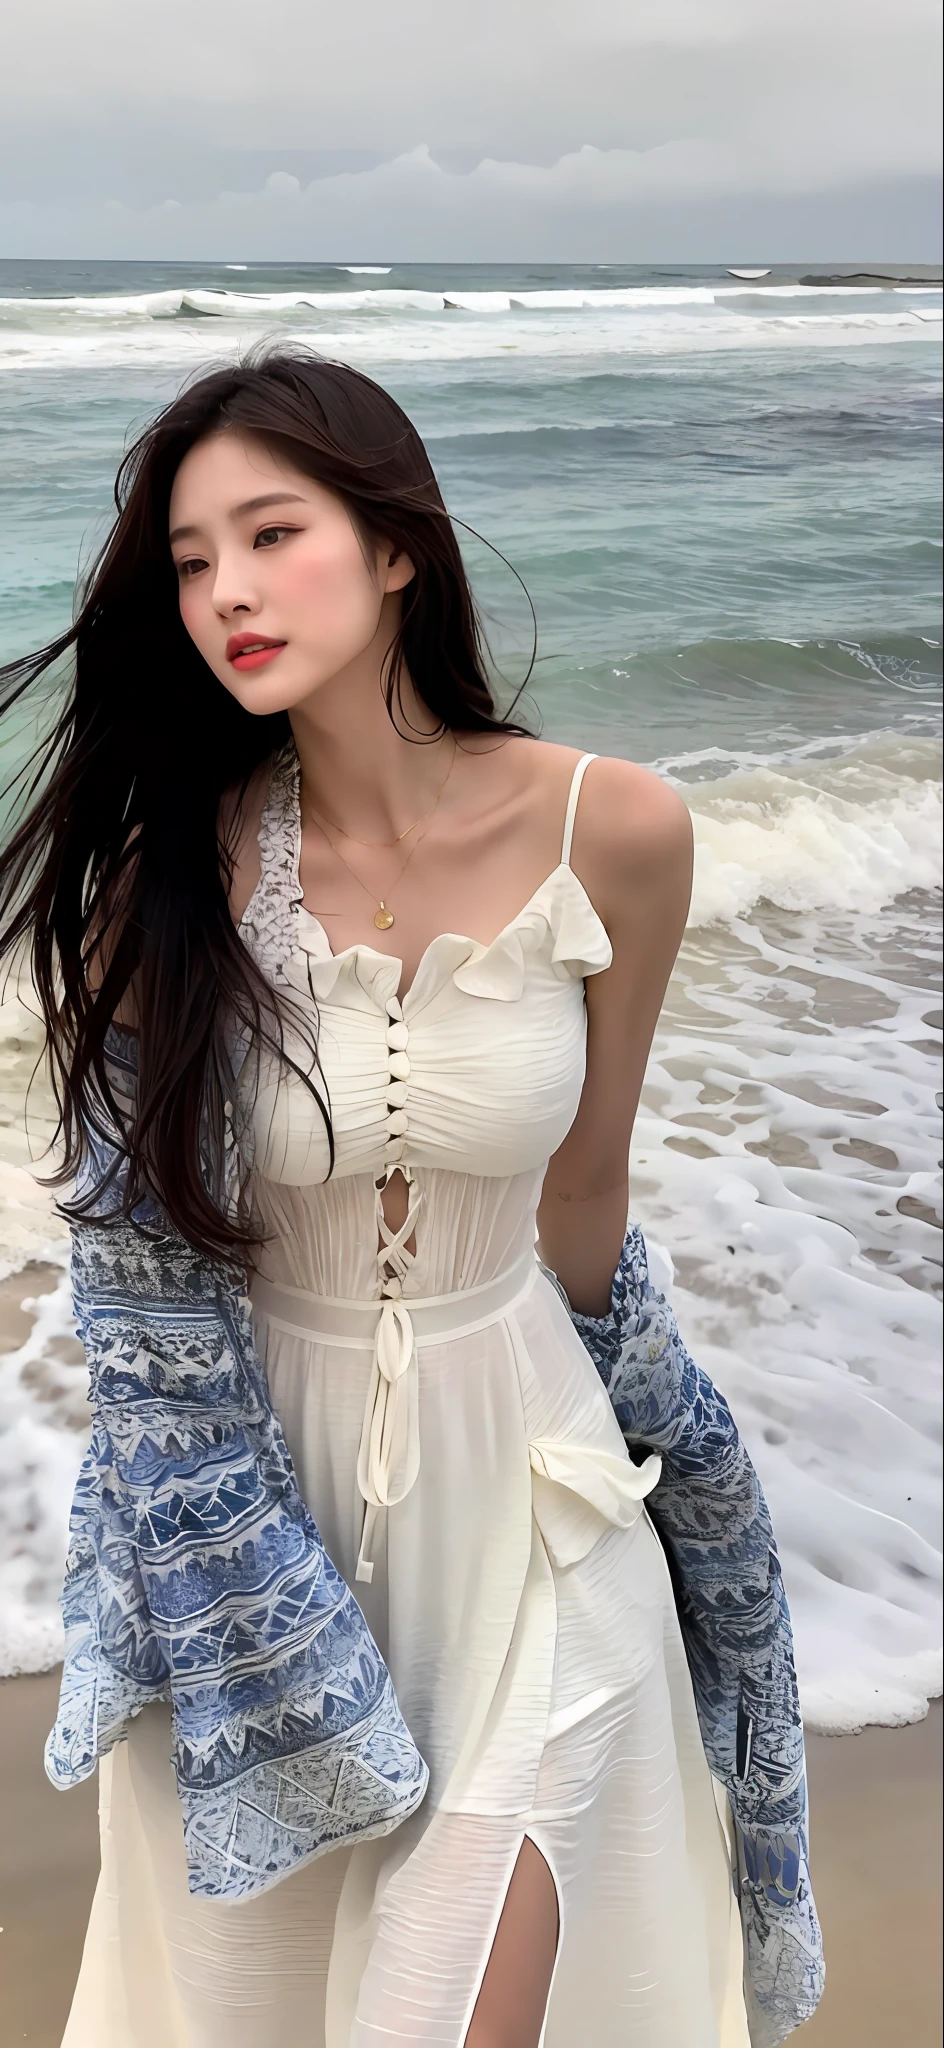 (傑作), (最好的品質), (詳細的), 1 名女孩, 22岁, 俏皮的表情, 大乳房, 裸露的乳房, 比基尼, 長髮, 美麗的, 自然的, 裸露, 知識分子, 在靠近海洋的海灘上, 南宰妍身穿白色洋裝行走, 美麗的 young Korean woman, 优美的姿态, 光太阳, 免費又免費, 在亞洲女性時尚界享有盛名的時裝模特, 她輕輕地走在海灘上, The 美麗的 temperament of an Asian girl is vividly displayed, 詮釋亞洲女性的魅力與風格.